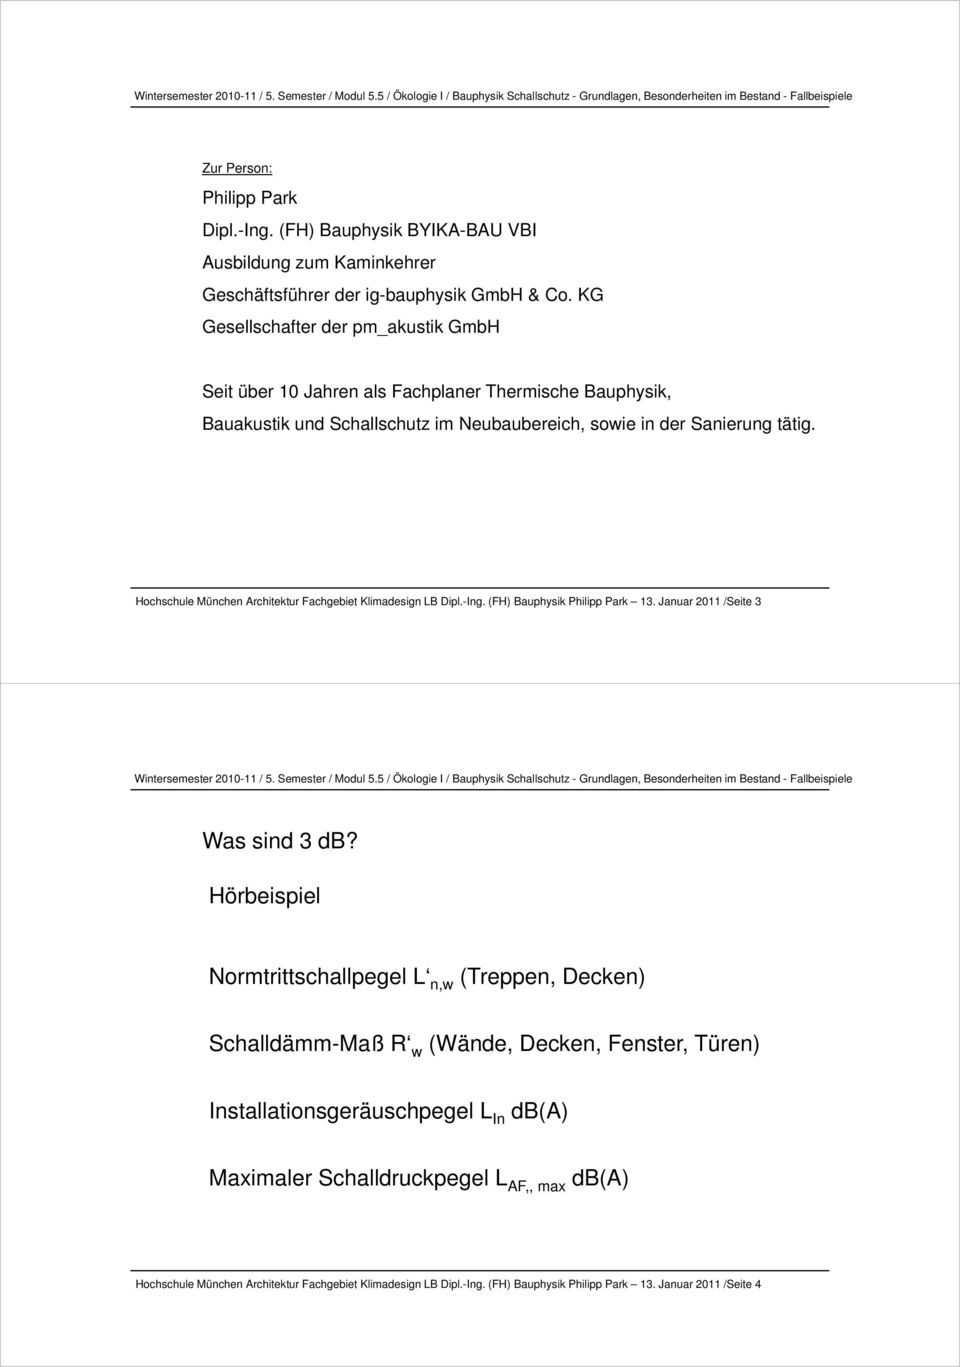 Hochschule München Architektur Fachgebiet Klimadesign LB Dipl.-Ing. (FH) Bauphysik Philipp Park 13. Januar 2011 /Seite 3 Was sind 3 db?